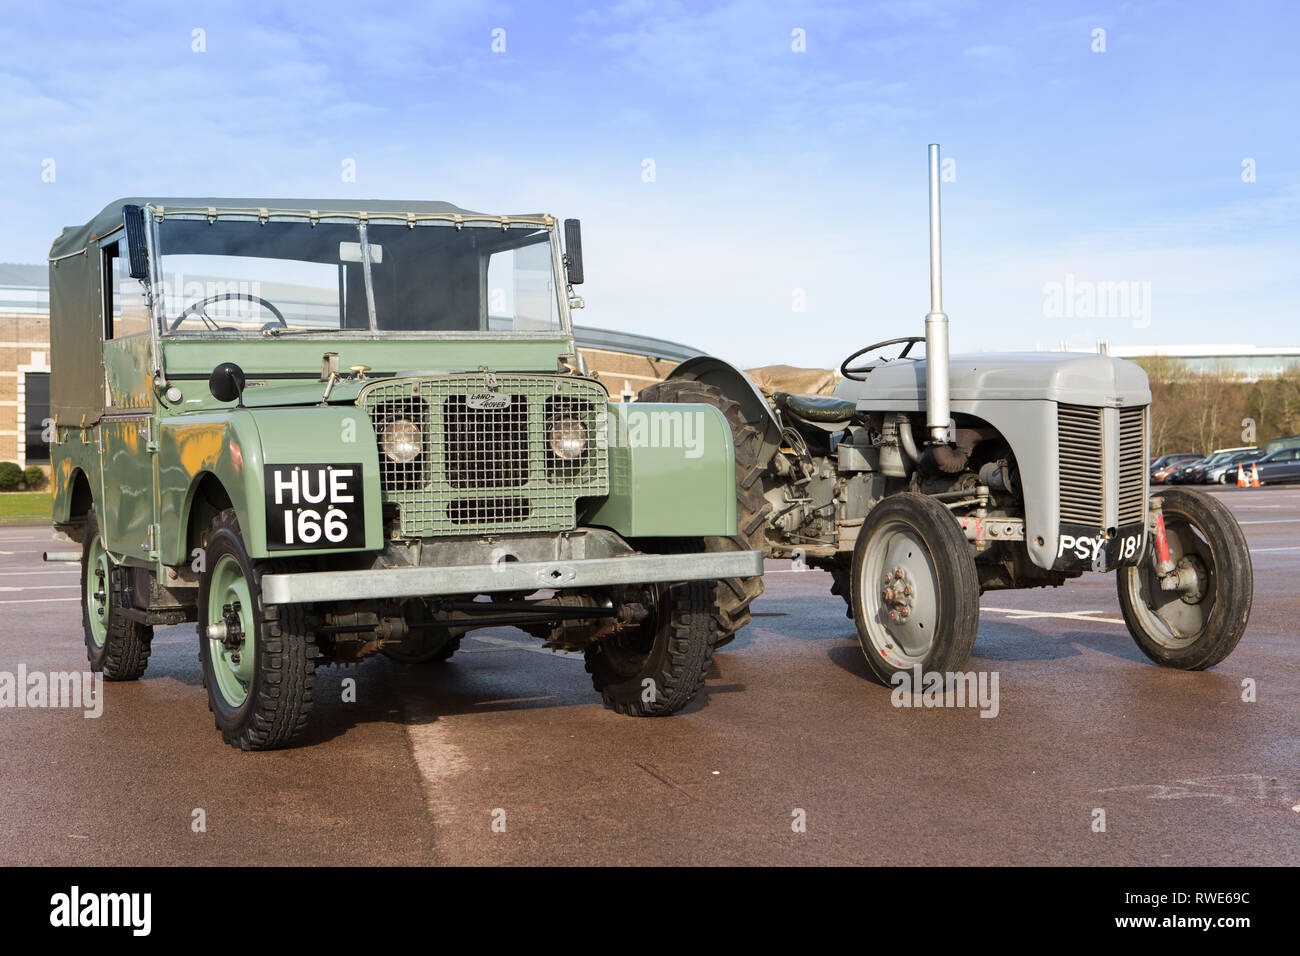 Icone britannica, entrambi, una serie 1949 1 Land Rover insieme con un iconico grigio trattore Ferguson - British Motor Museum Gaydon REGNO UNITO Foto Stock